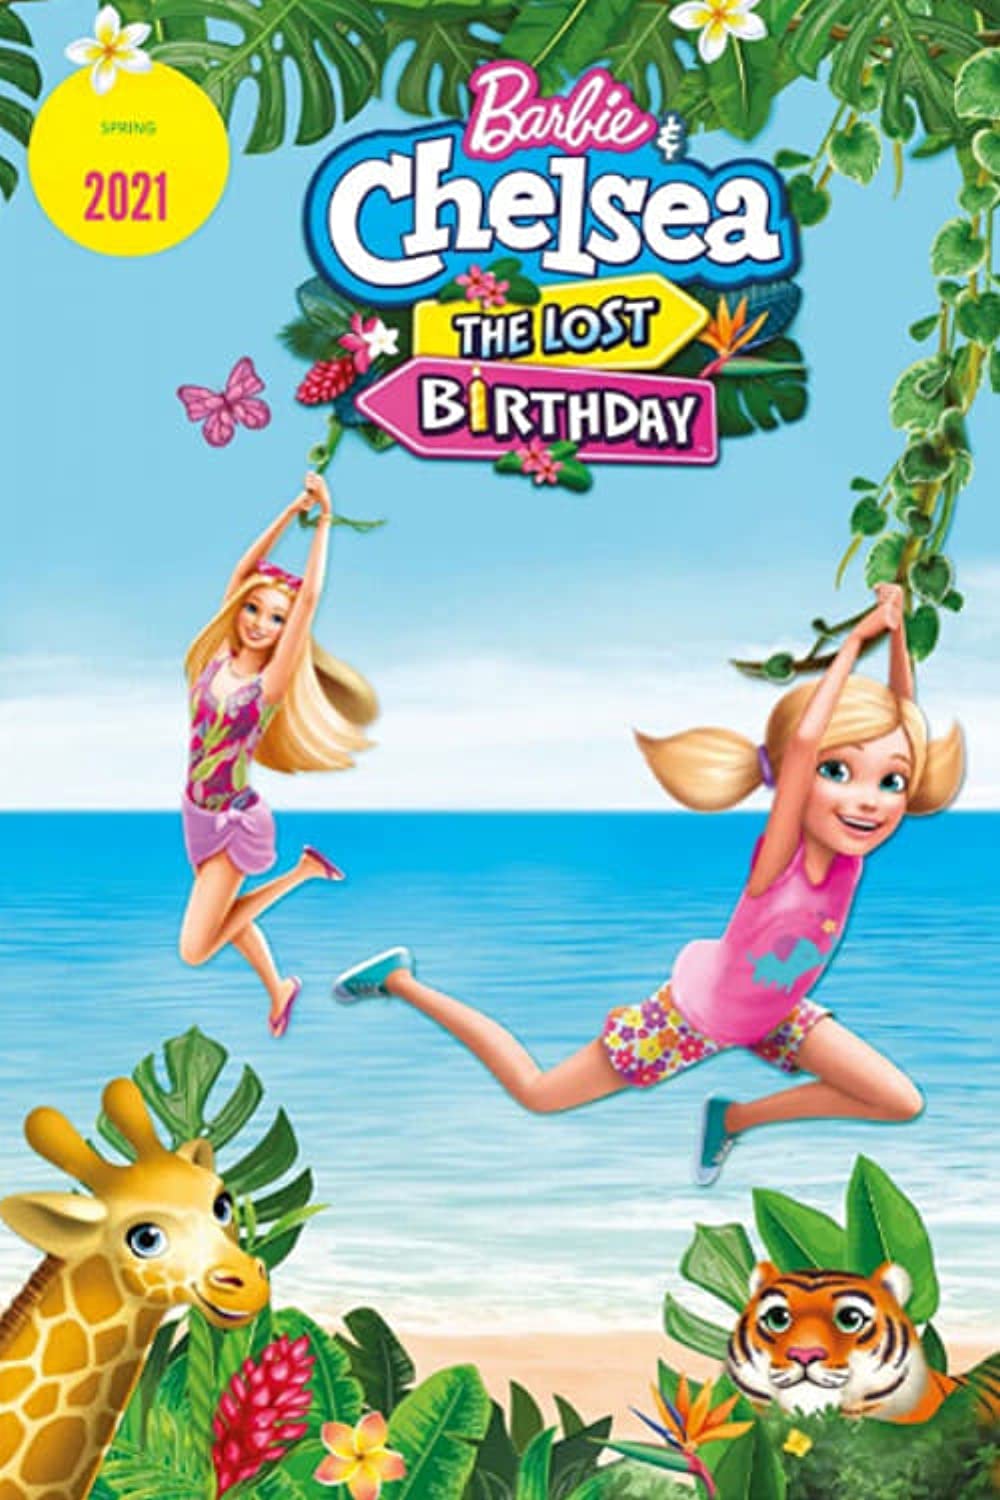 Barbie & Chelsea The Lost Birthday (2021) บาร์บี้กับเชลซี วันเกิดที่หายไป พากย์ไทย